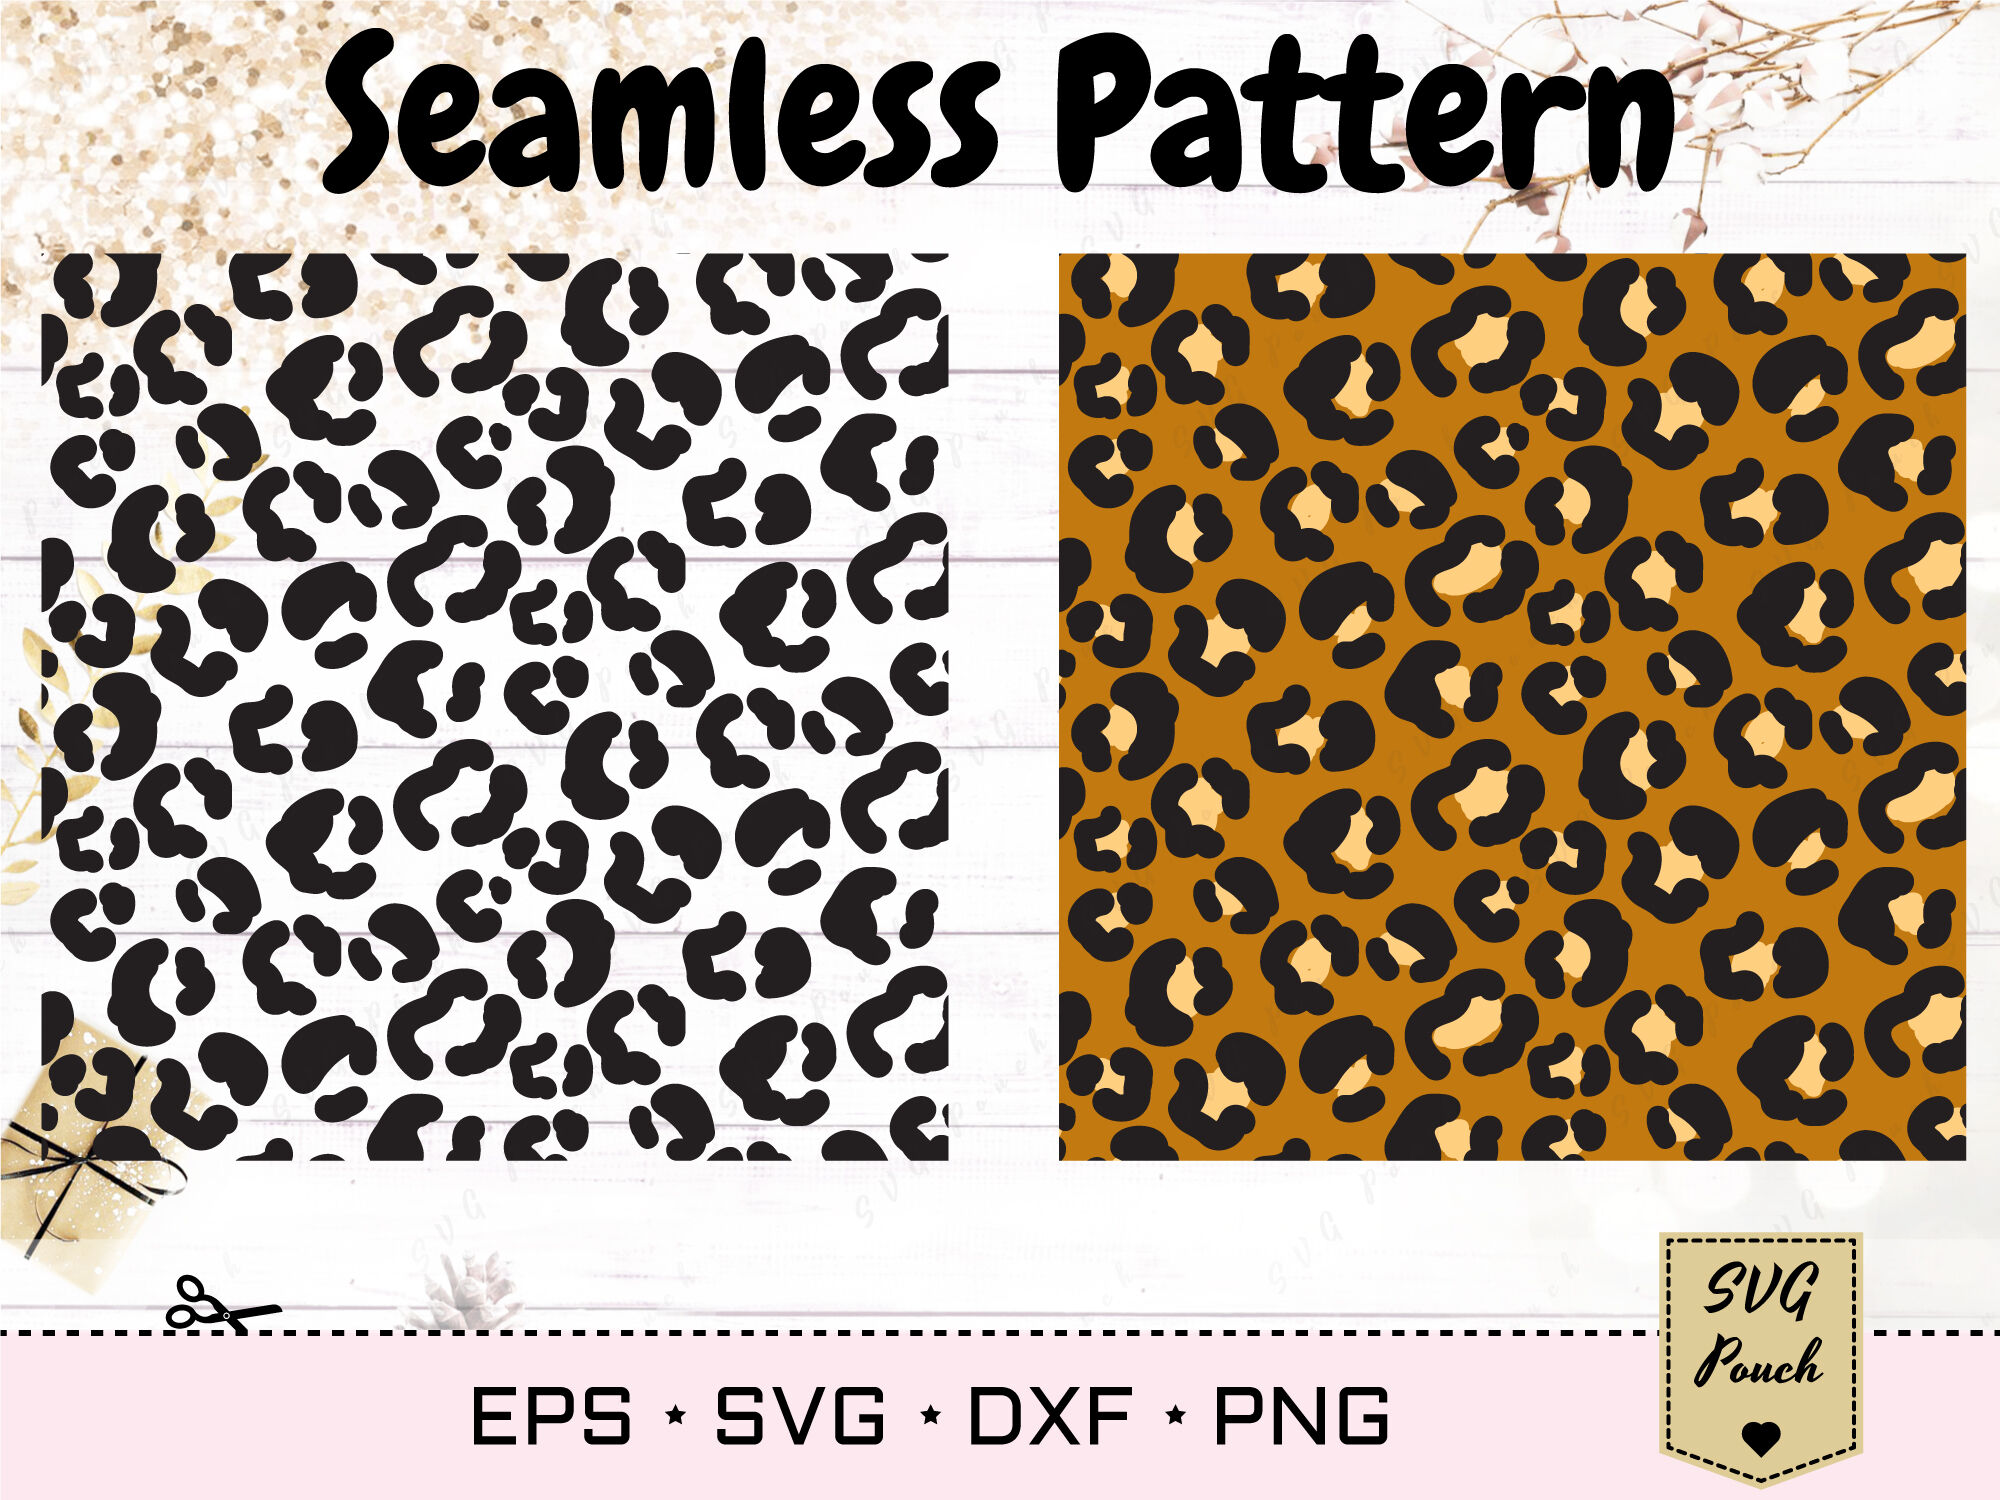 Seamless Pattern Cowboy Santa Leopard